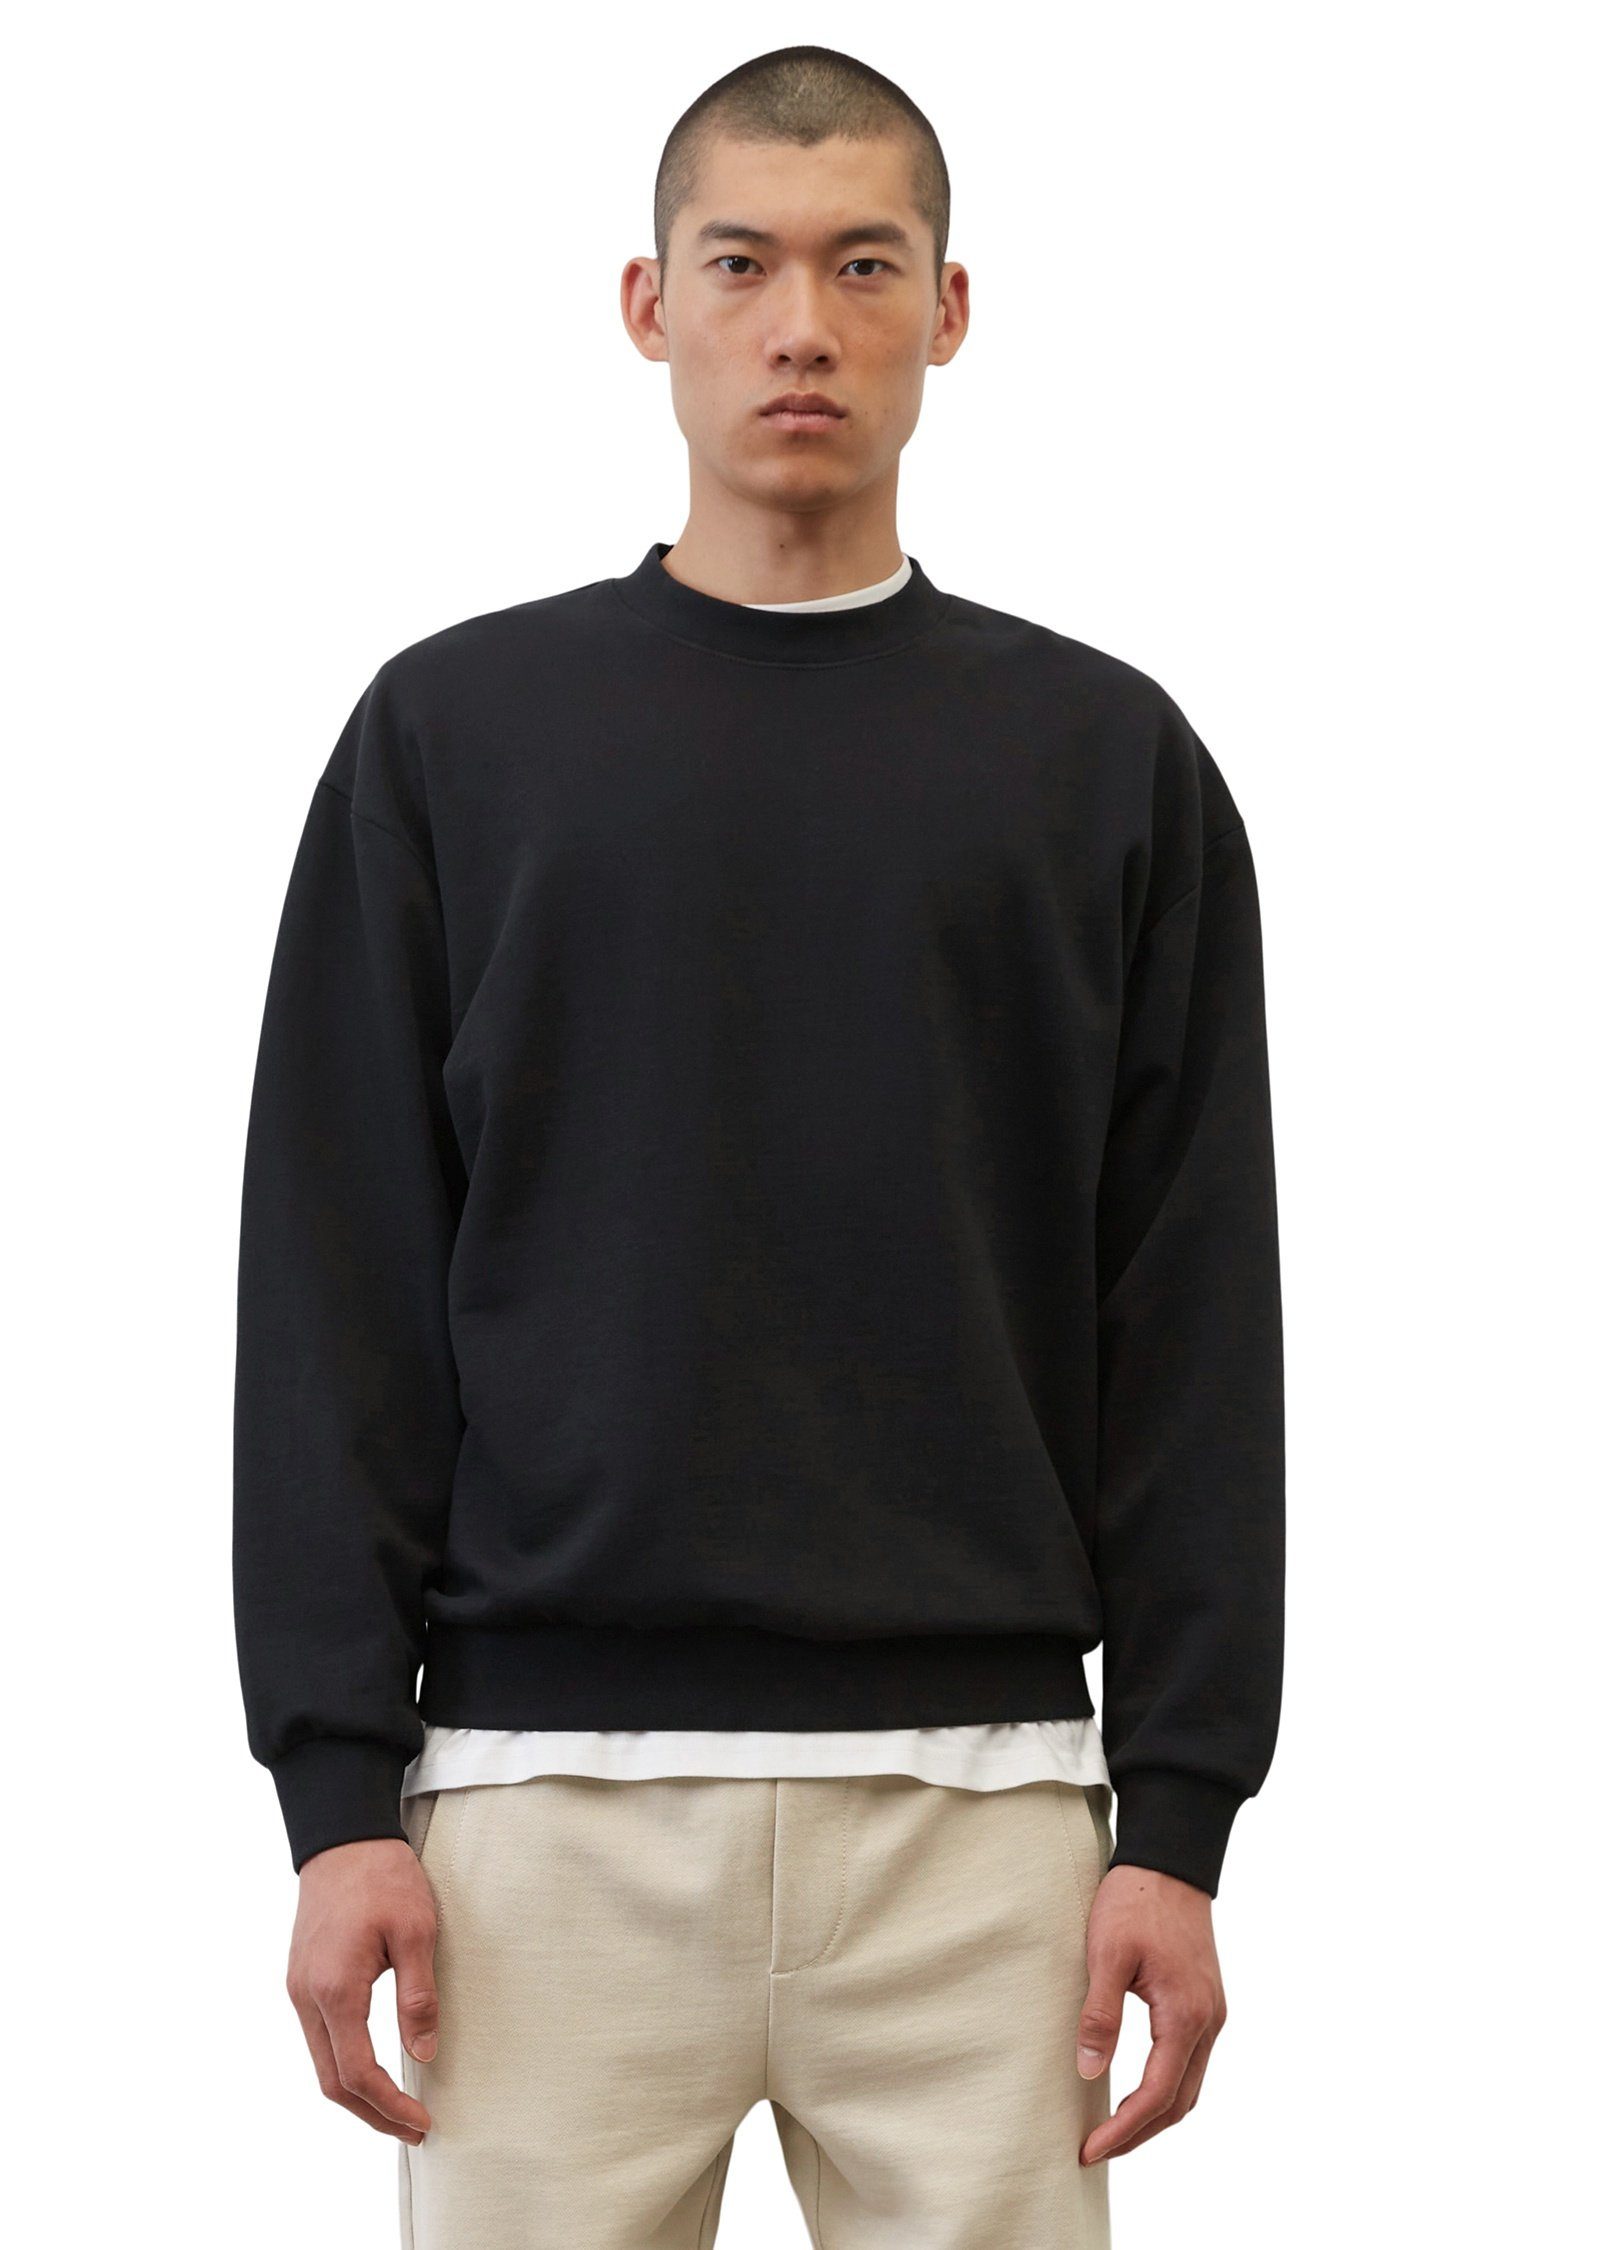 Marc O'Polo Sweatshirt aus reiner Bio-Baumwolle schwarz